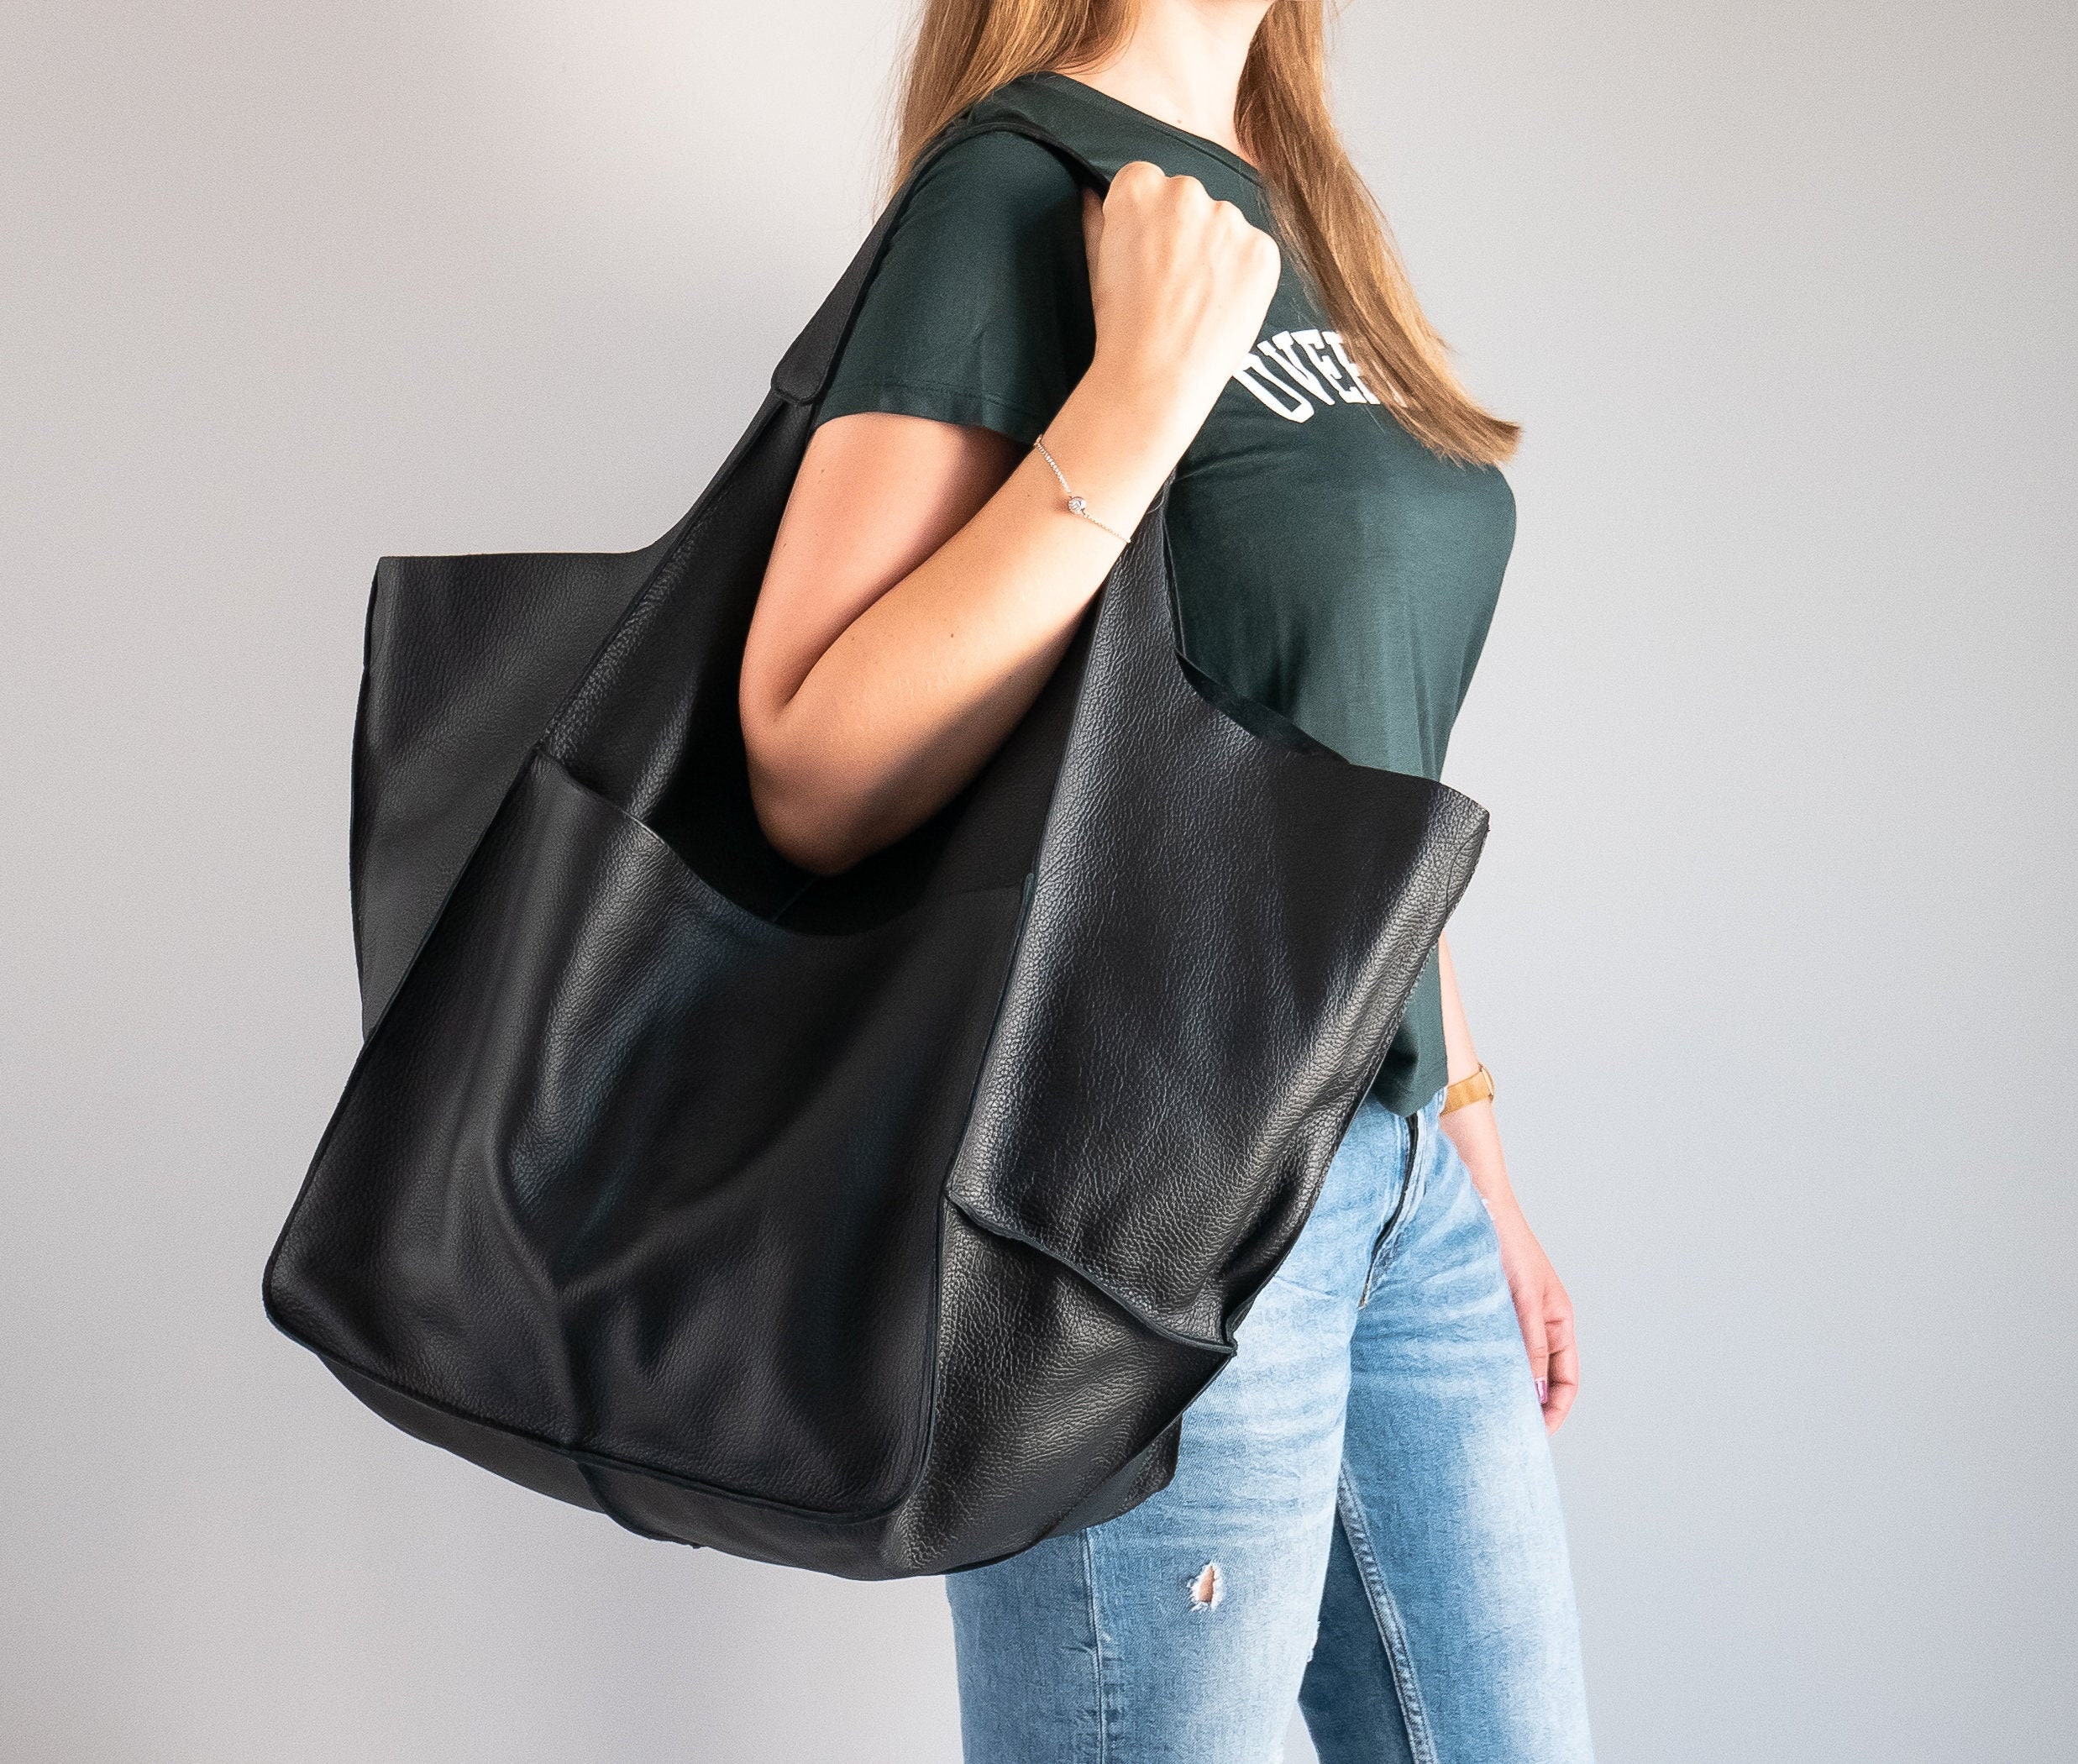 Dog Goyar bag Big Shoulder Bags A+++ Leather Tote Bag Large